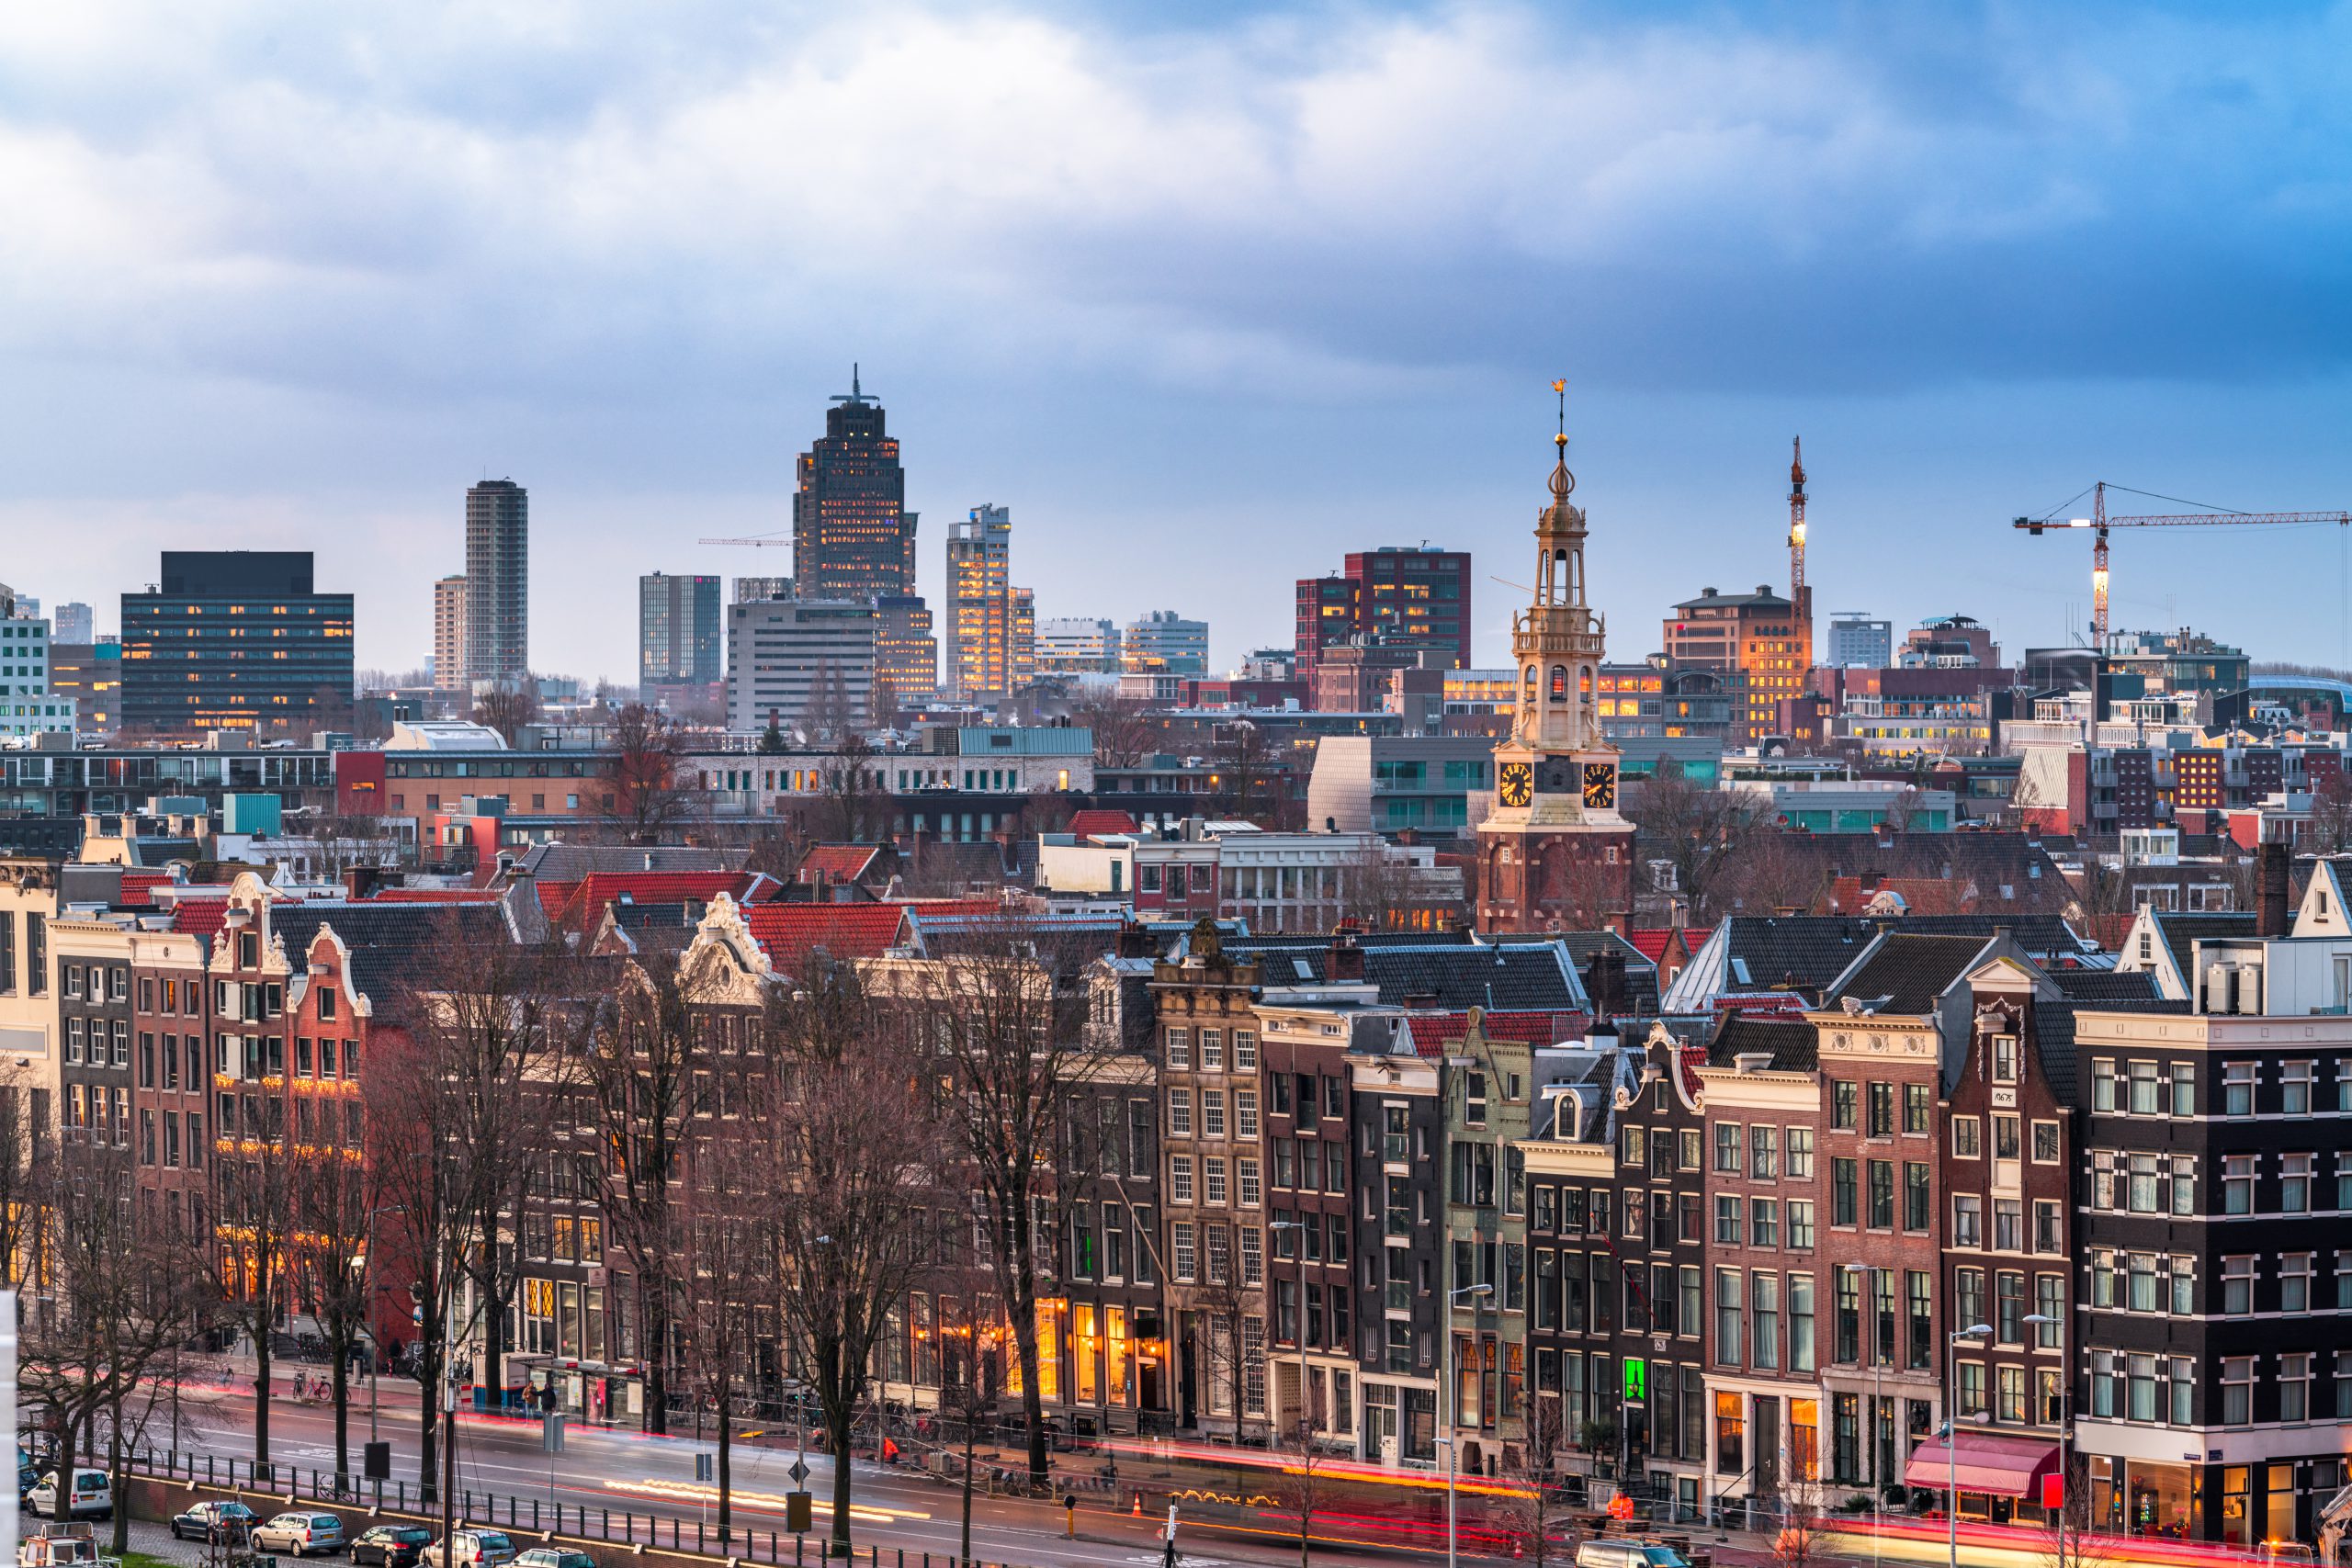 Amsterdam wil meedoen aan experiment gesloten coffeeshopketen